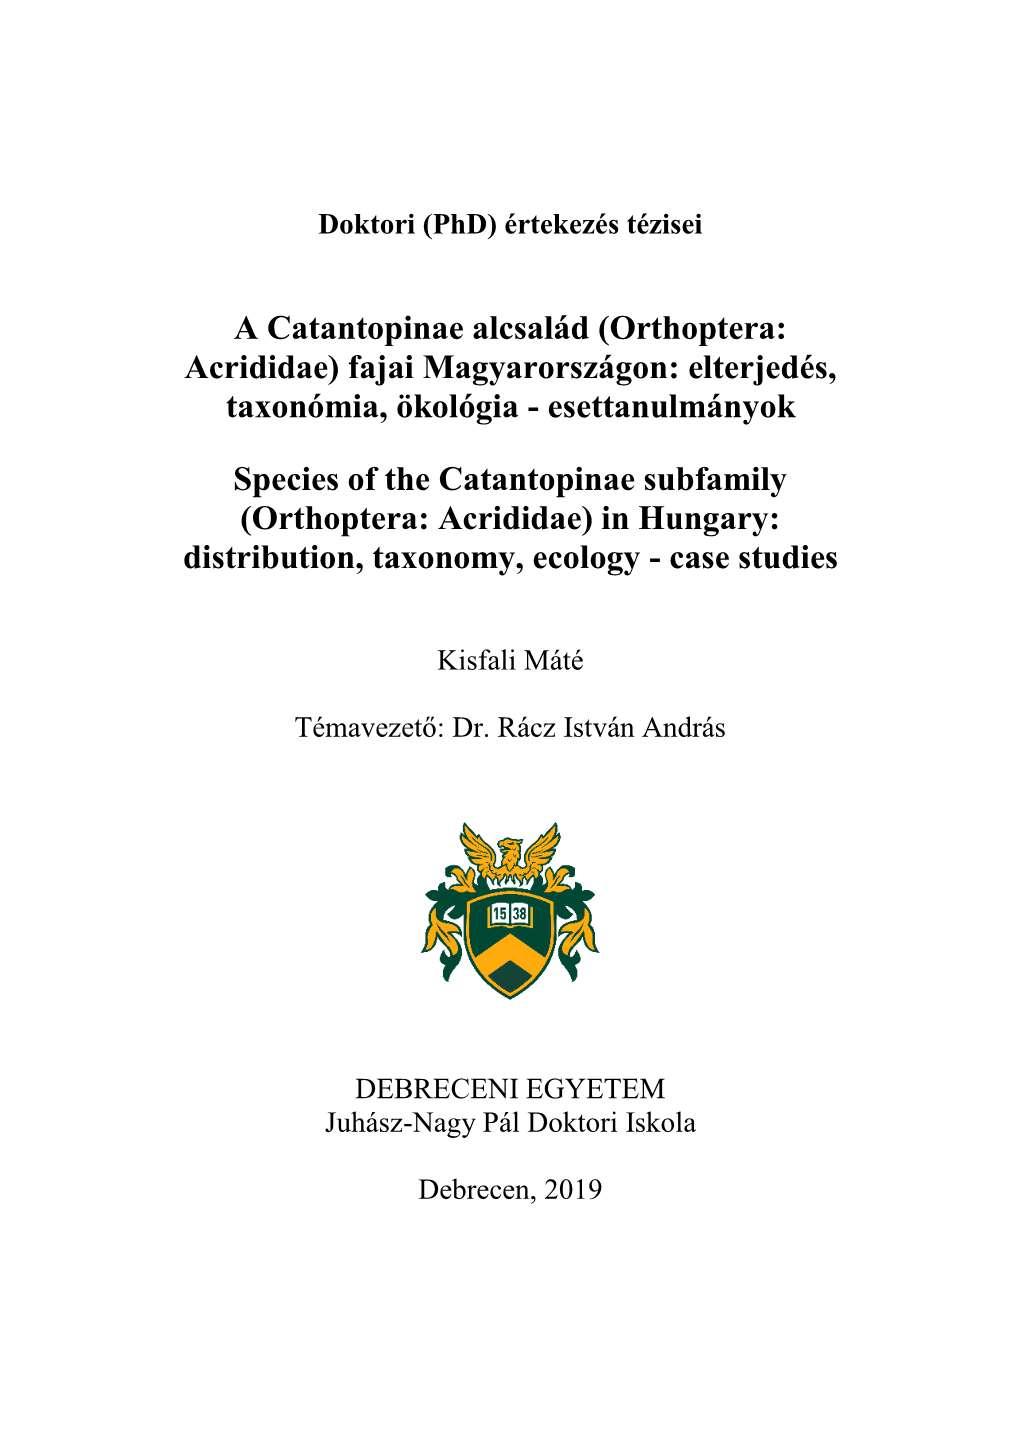 Orthoptera: Acrididae) Fajai Magyarországon: Elterjedés, Taxonómia, Ökológia - Esettanulmányok